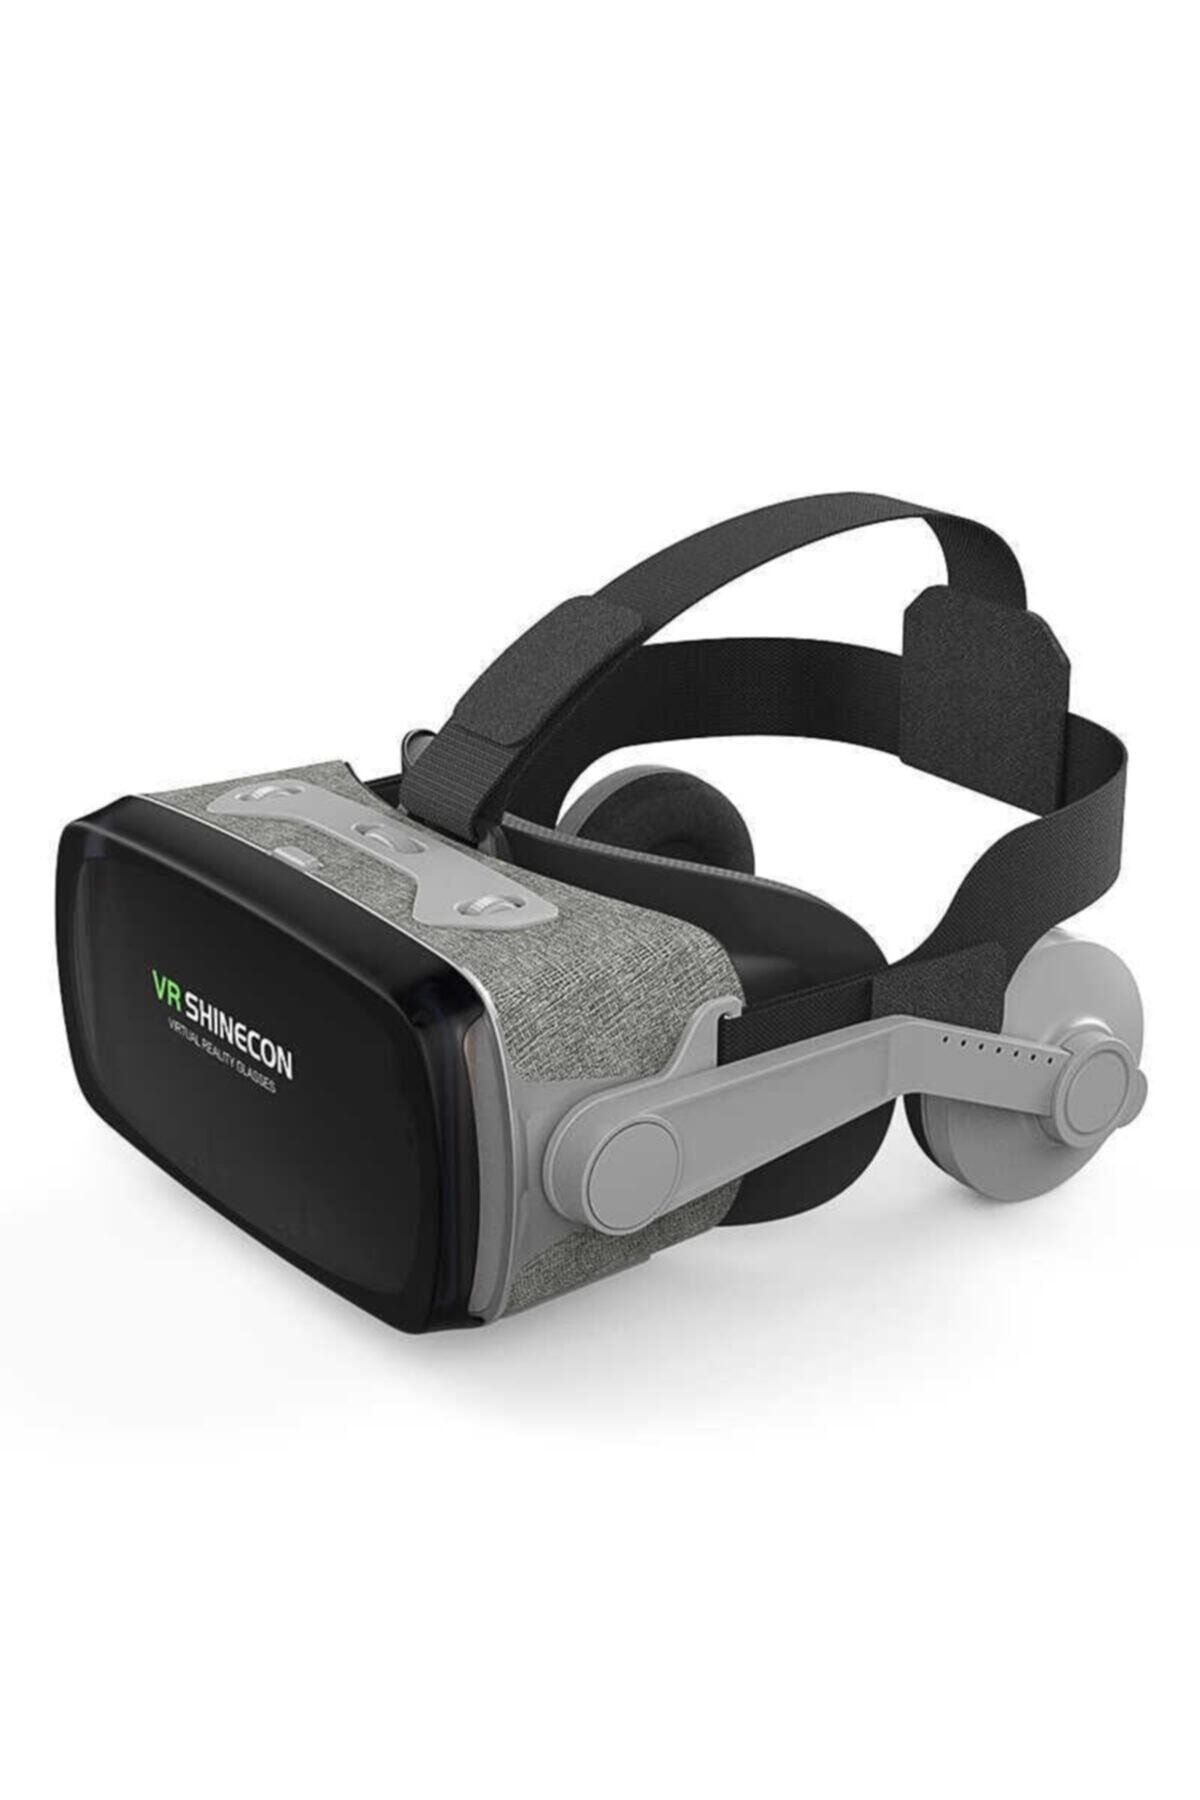 VR Shinecon G07e Vr Shinecon 3d Sanal Gerçeklik Gözlüğü